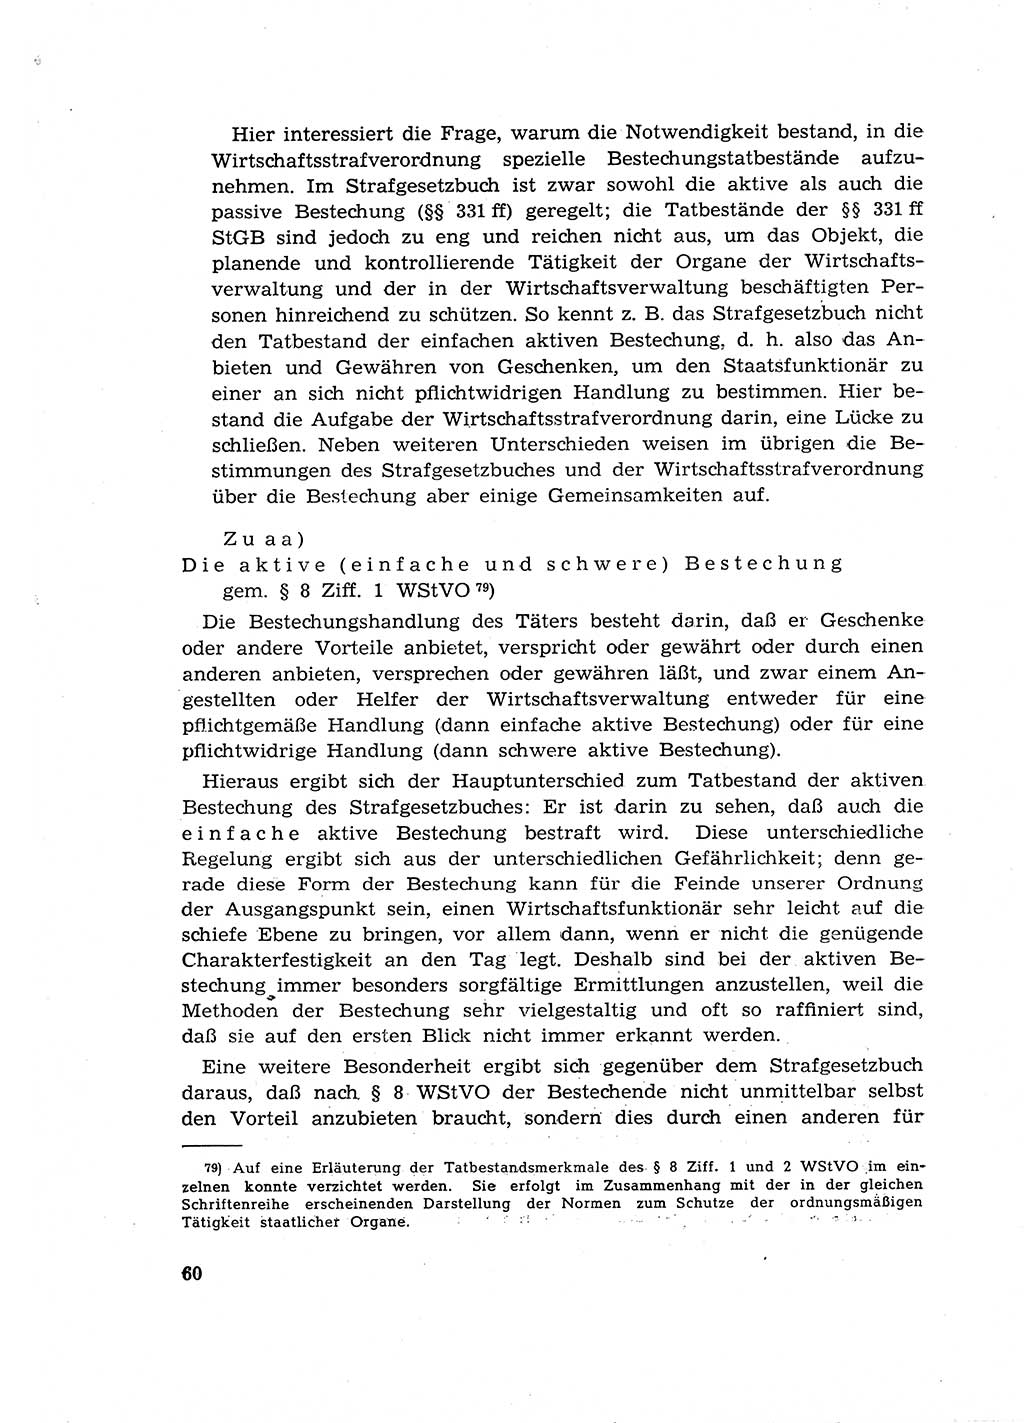 Materialien zum Strafrecht, Besonderer Teil [Deutsche Demokratische Republik (DDR)] 1955, Seite 60 (Mat. Strafr. BT DDR 1955, S. 60)